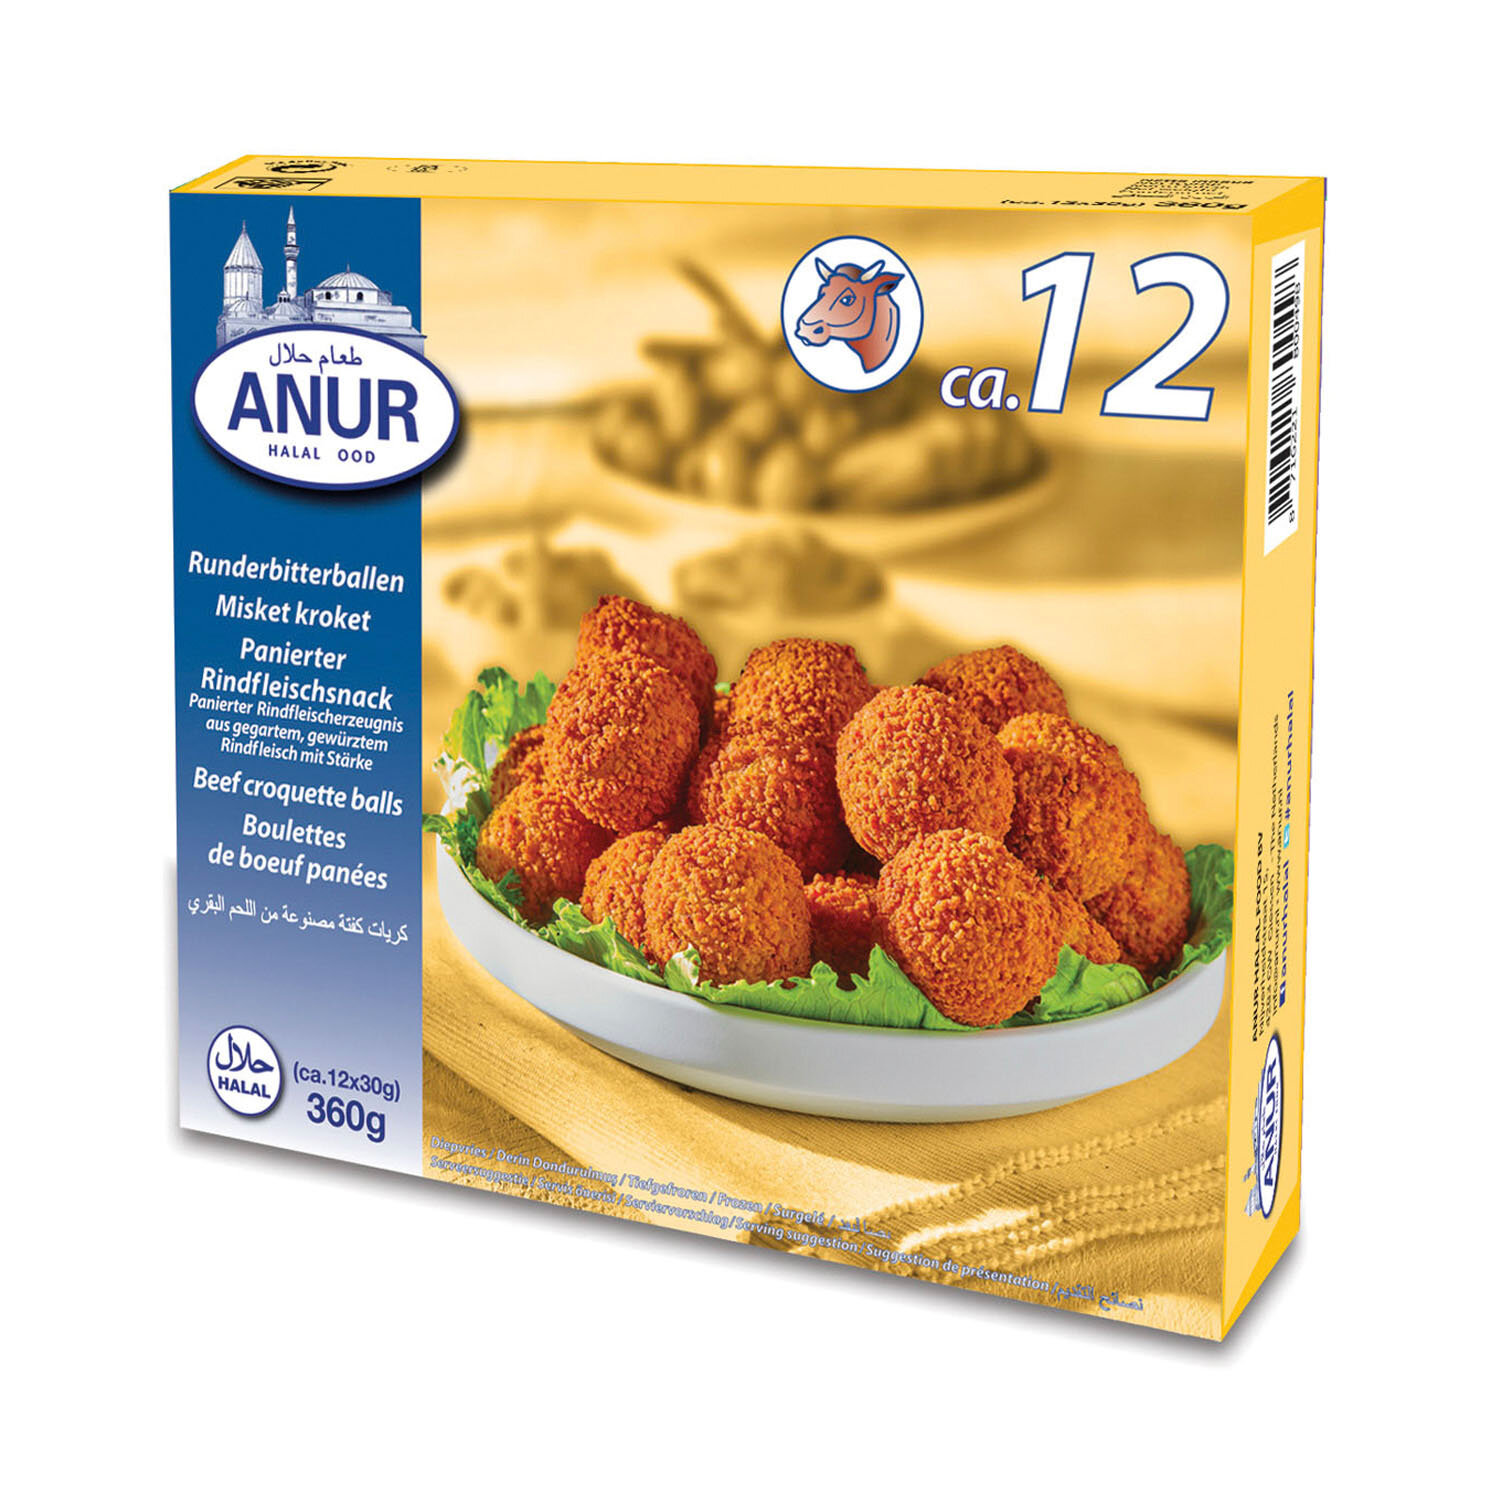 Runderbitterballen - ANUR Halal Food  (Copy) (Copy)